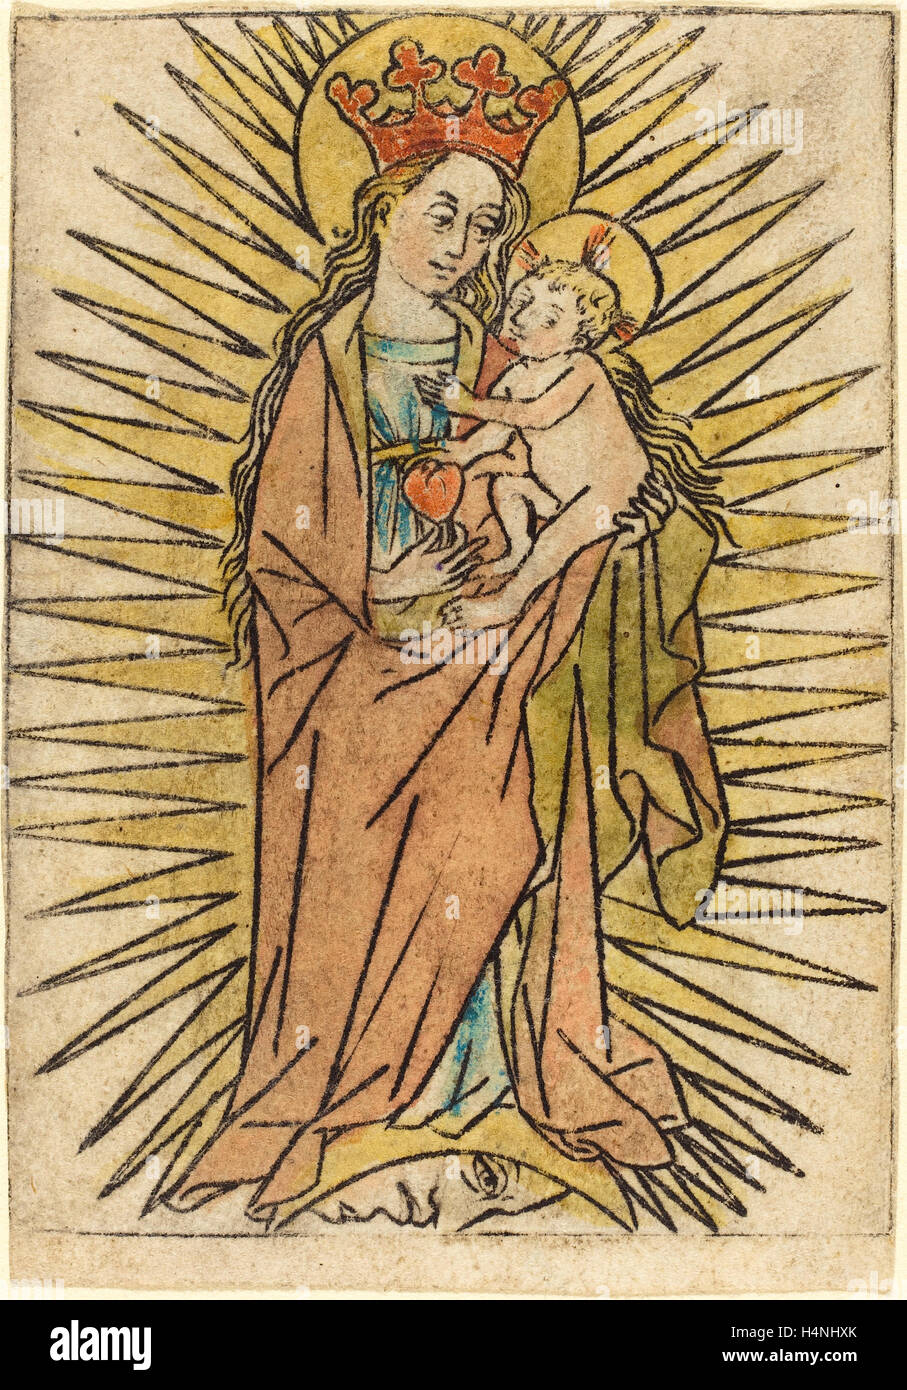 L'allemand du 15e siècle, la Vierge et l'enfant avec une poire, ch. 1440-1460, gravure, colorées à la main en rouge, orange, vert, jaune Banque D'Images